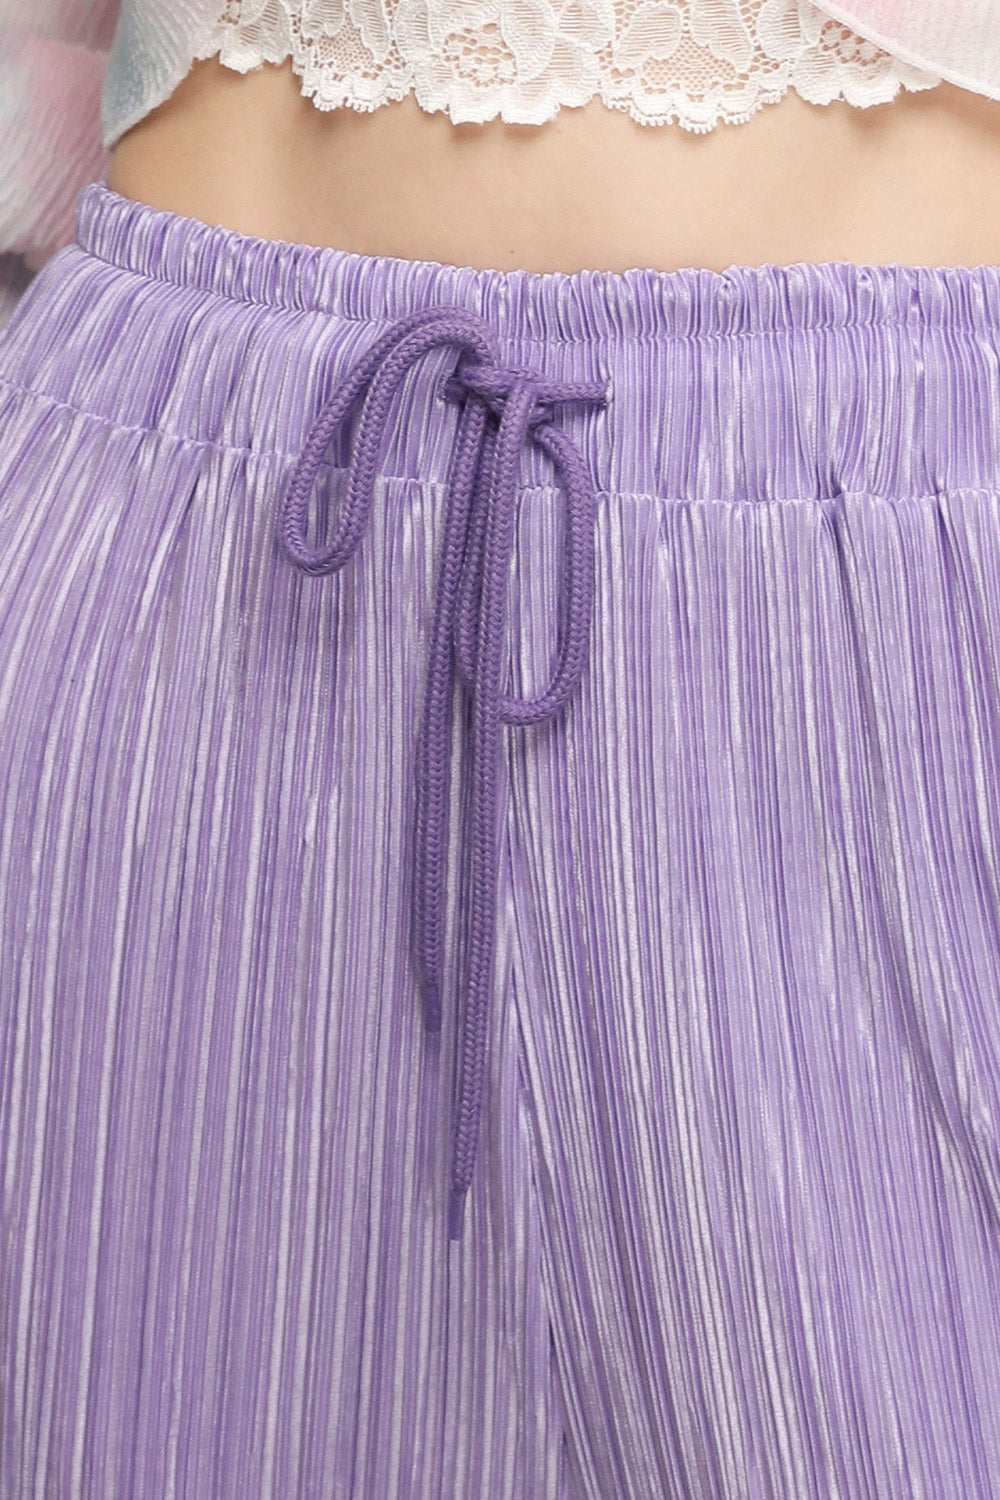 storets.com Peyton Crinkled Pleated Pants